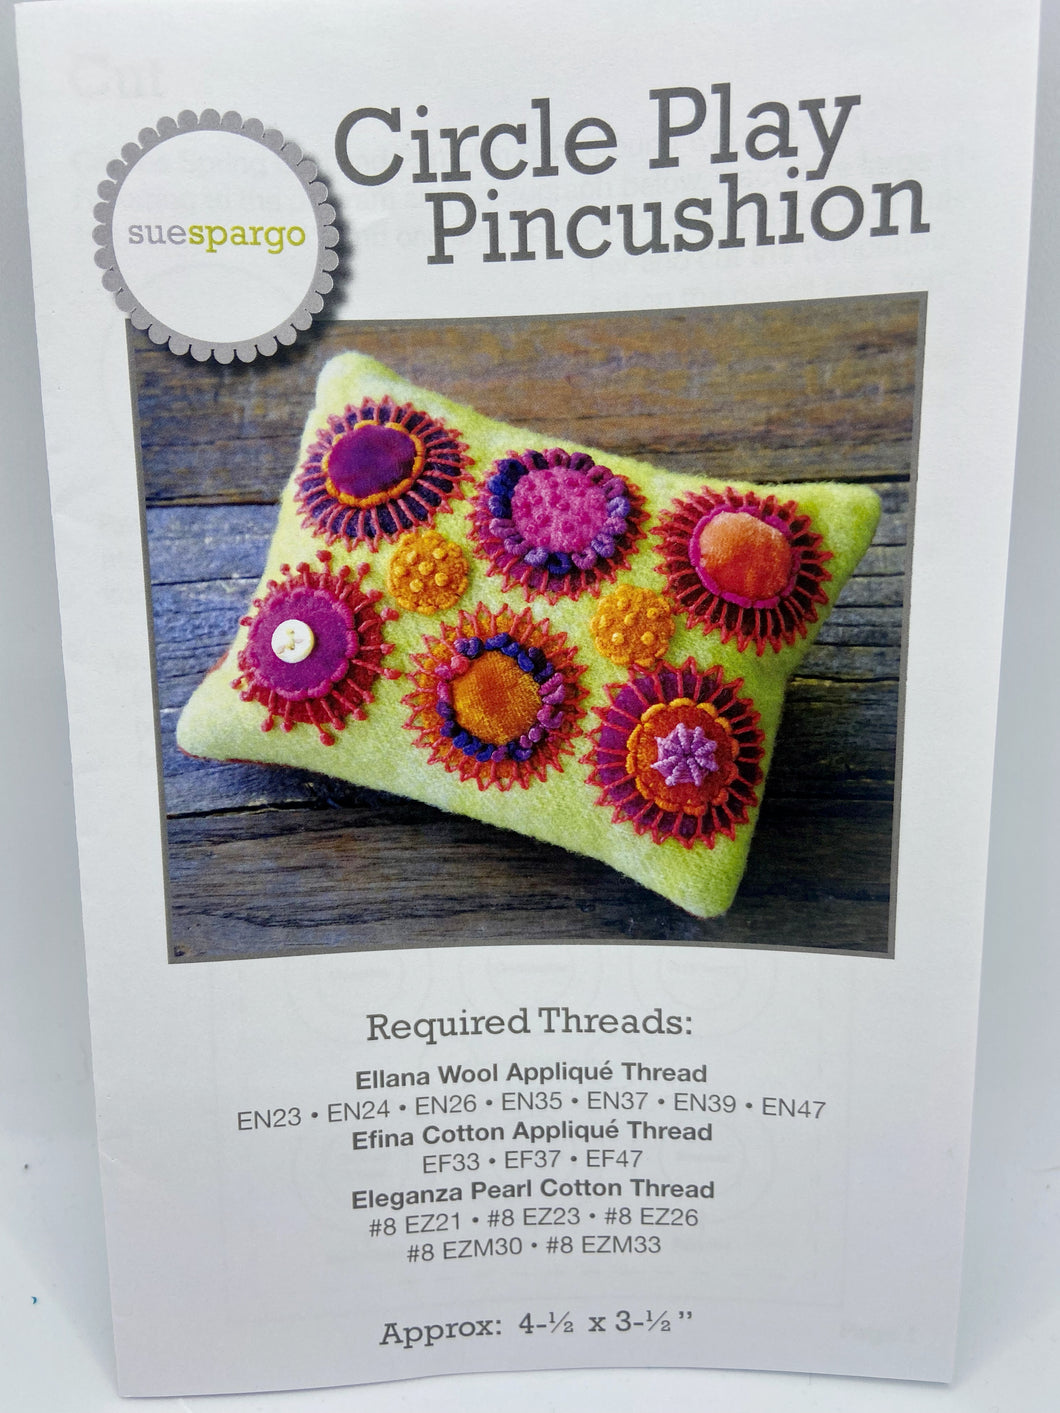 Circle Play Pincushion by Sue Spargo